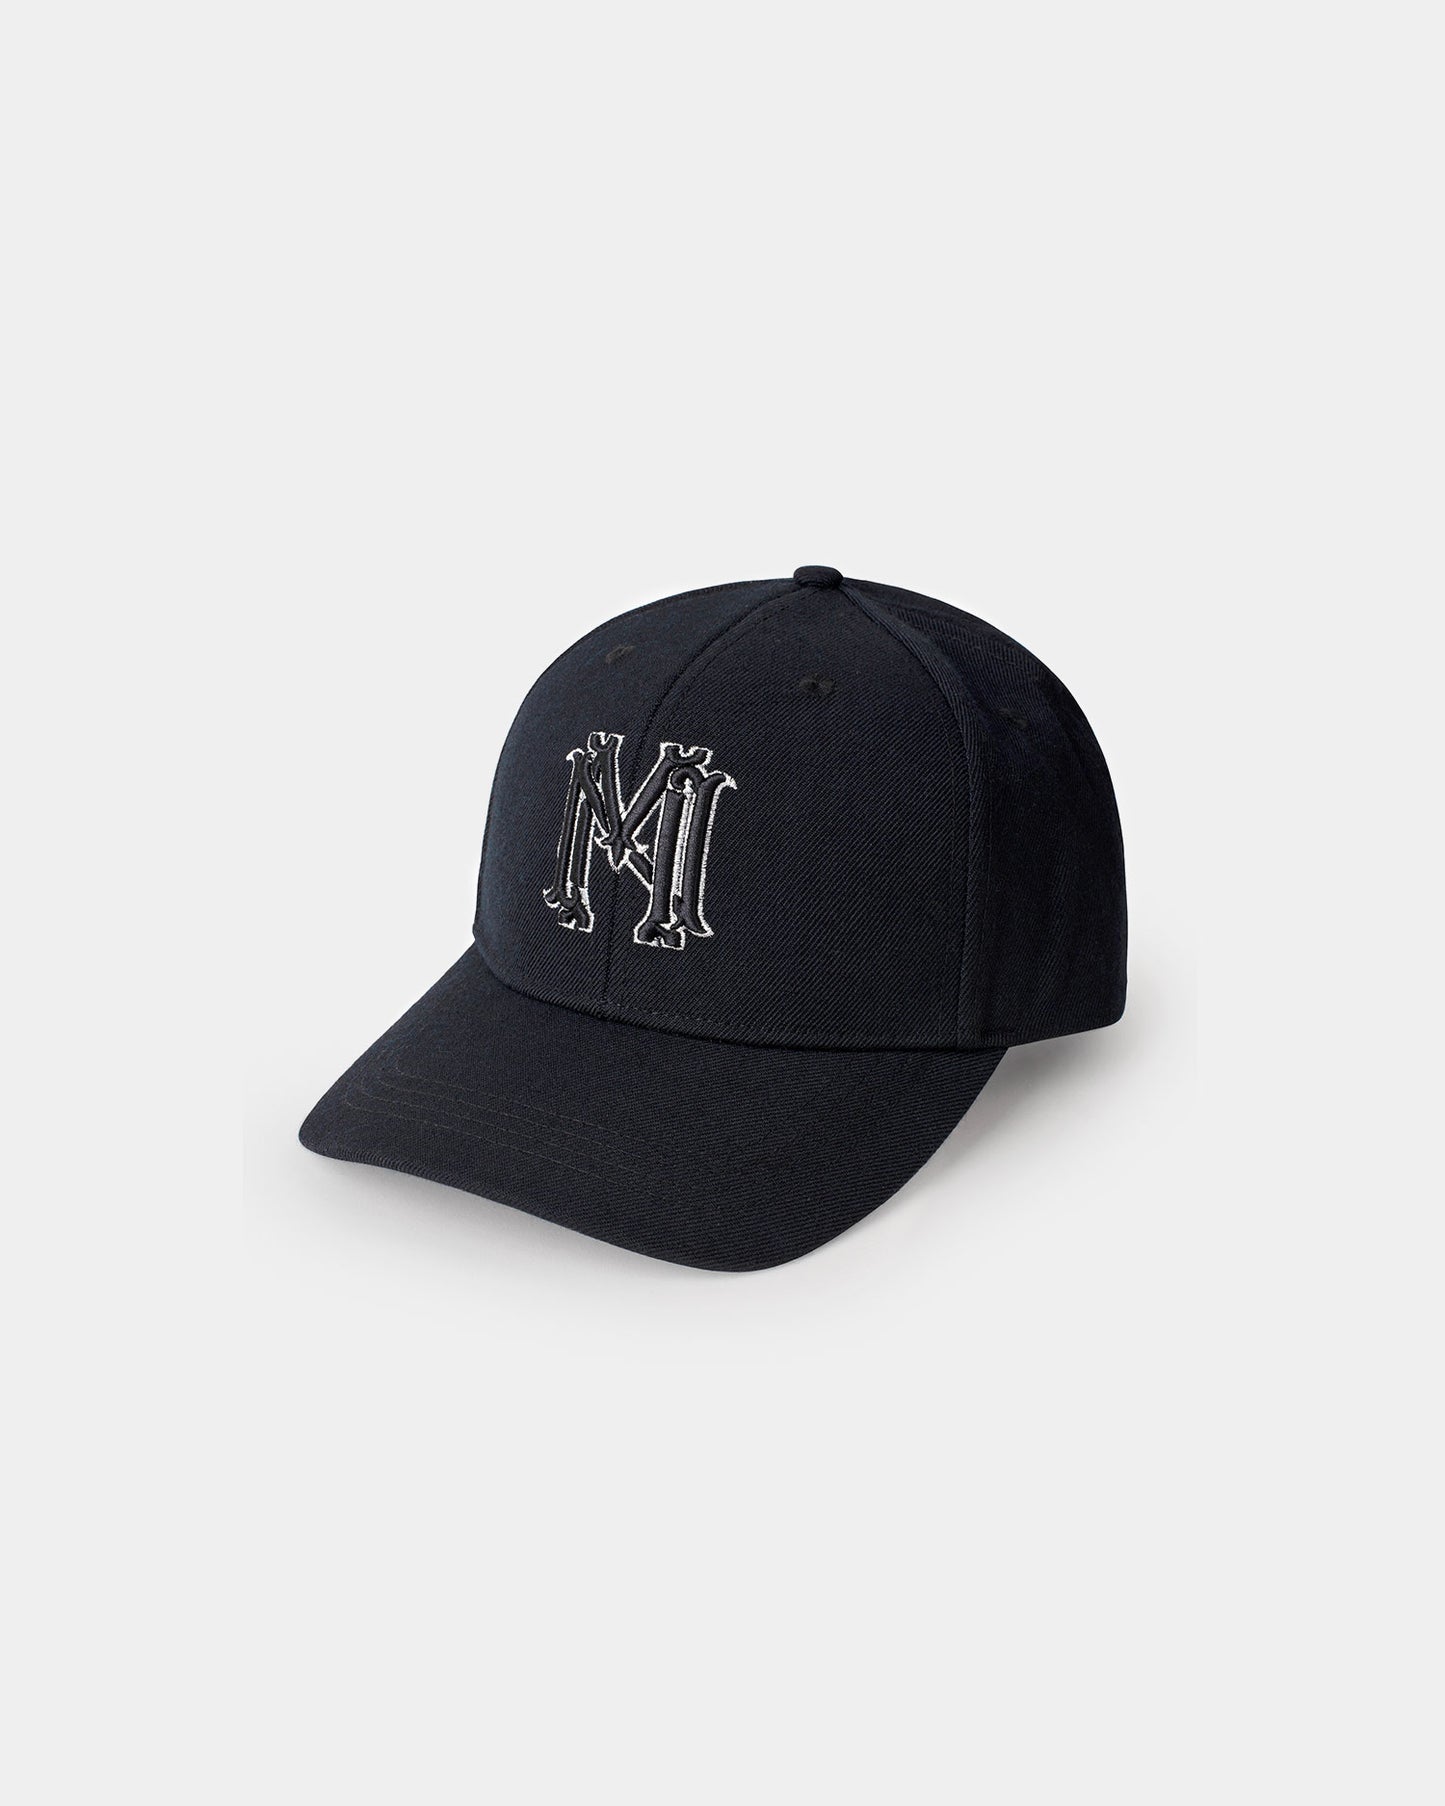 Classic pure wool twill black blazon hat logo